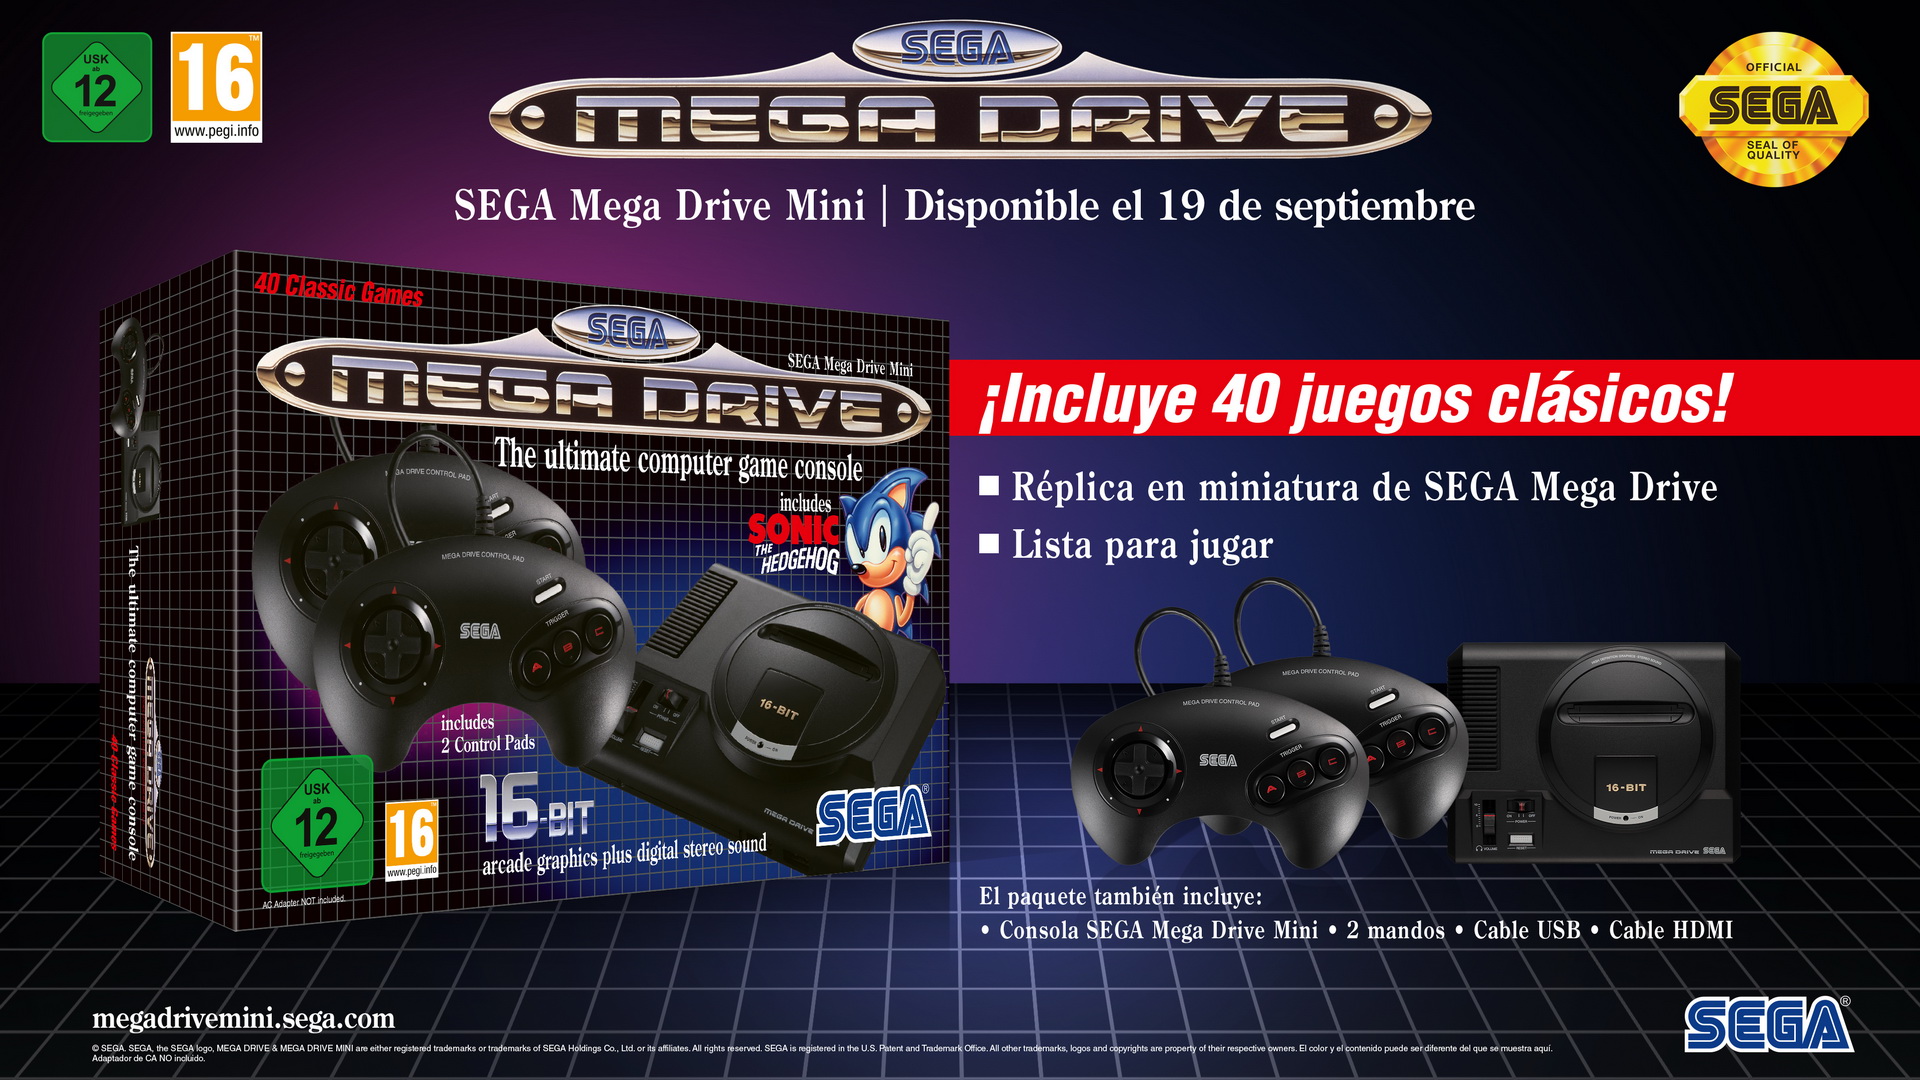 Объявлен SEGA Mega Drive Mini